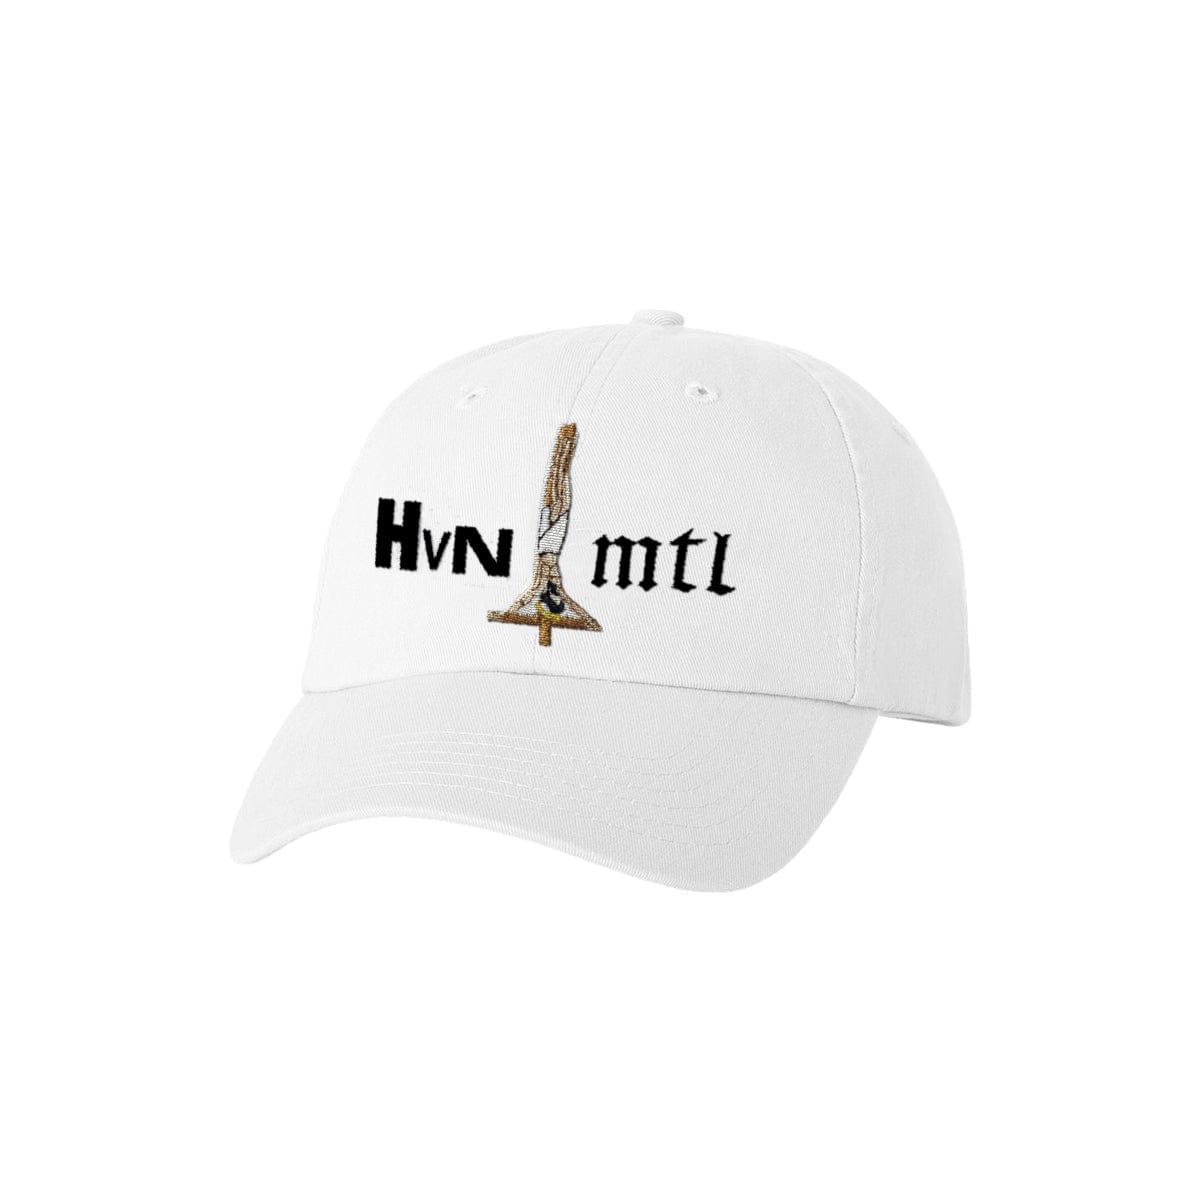 The Flenser Apparel Midwife "HVN MTL" Hat